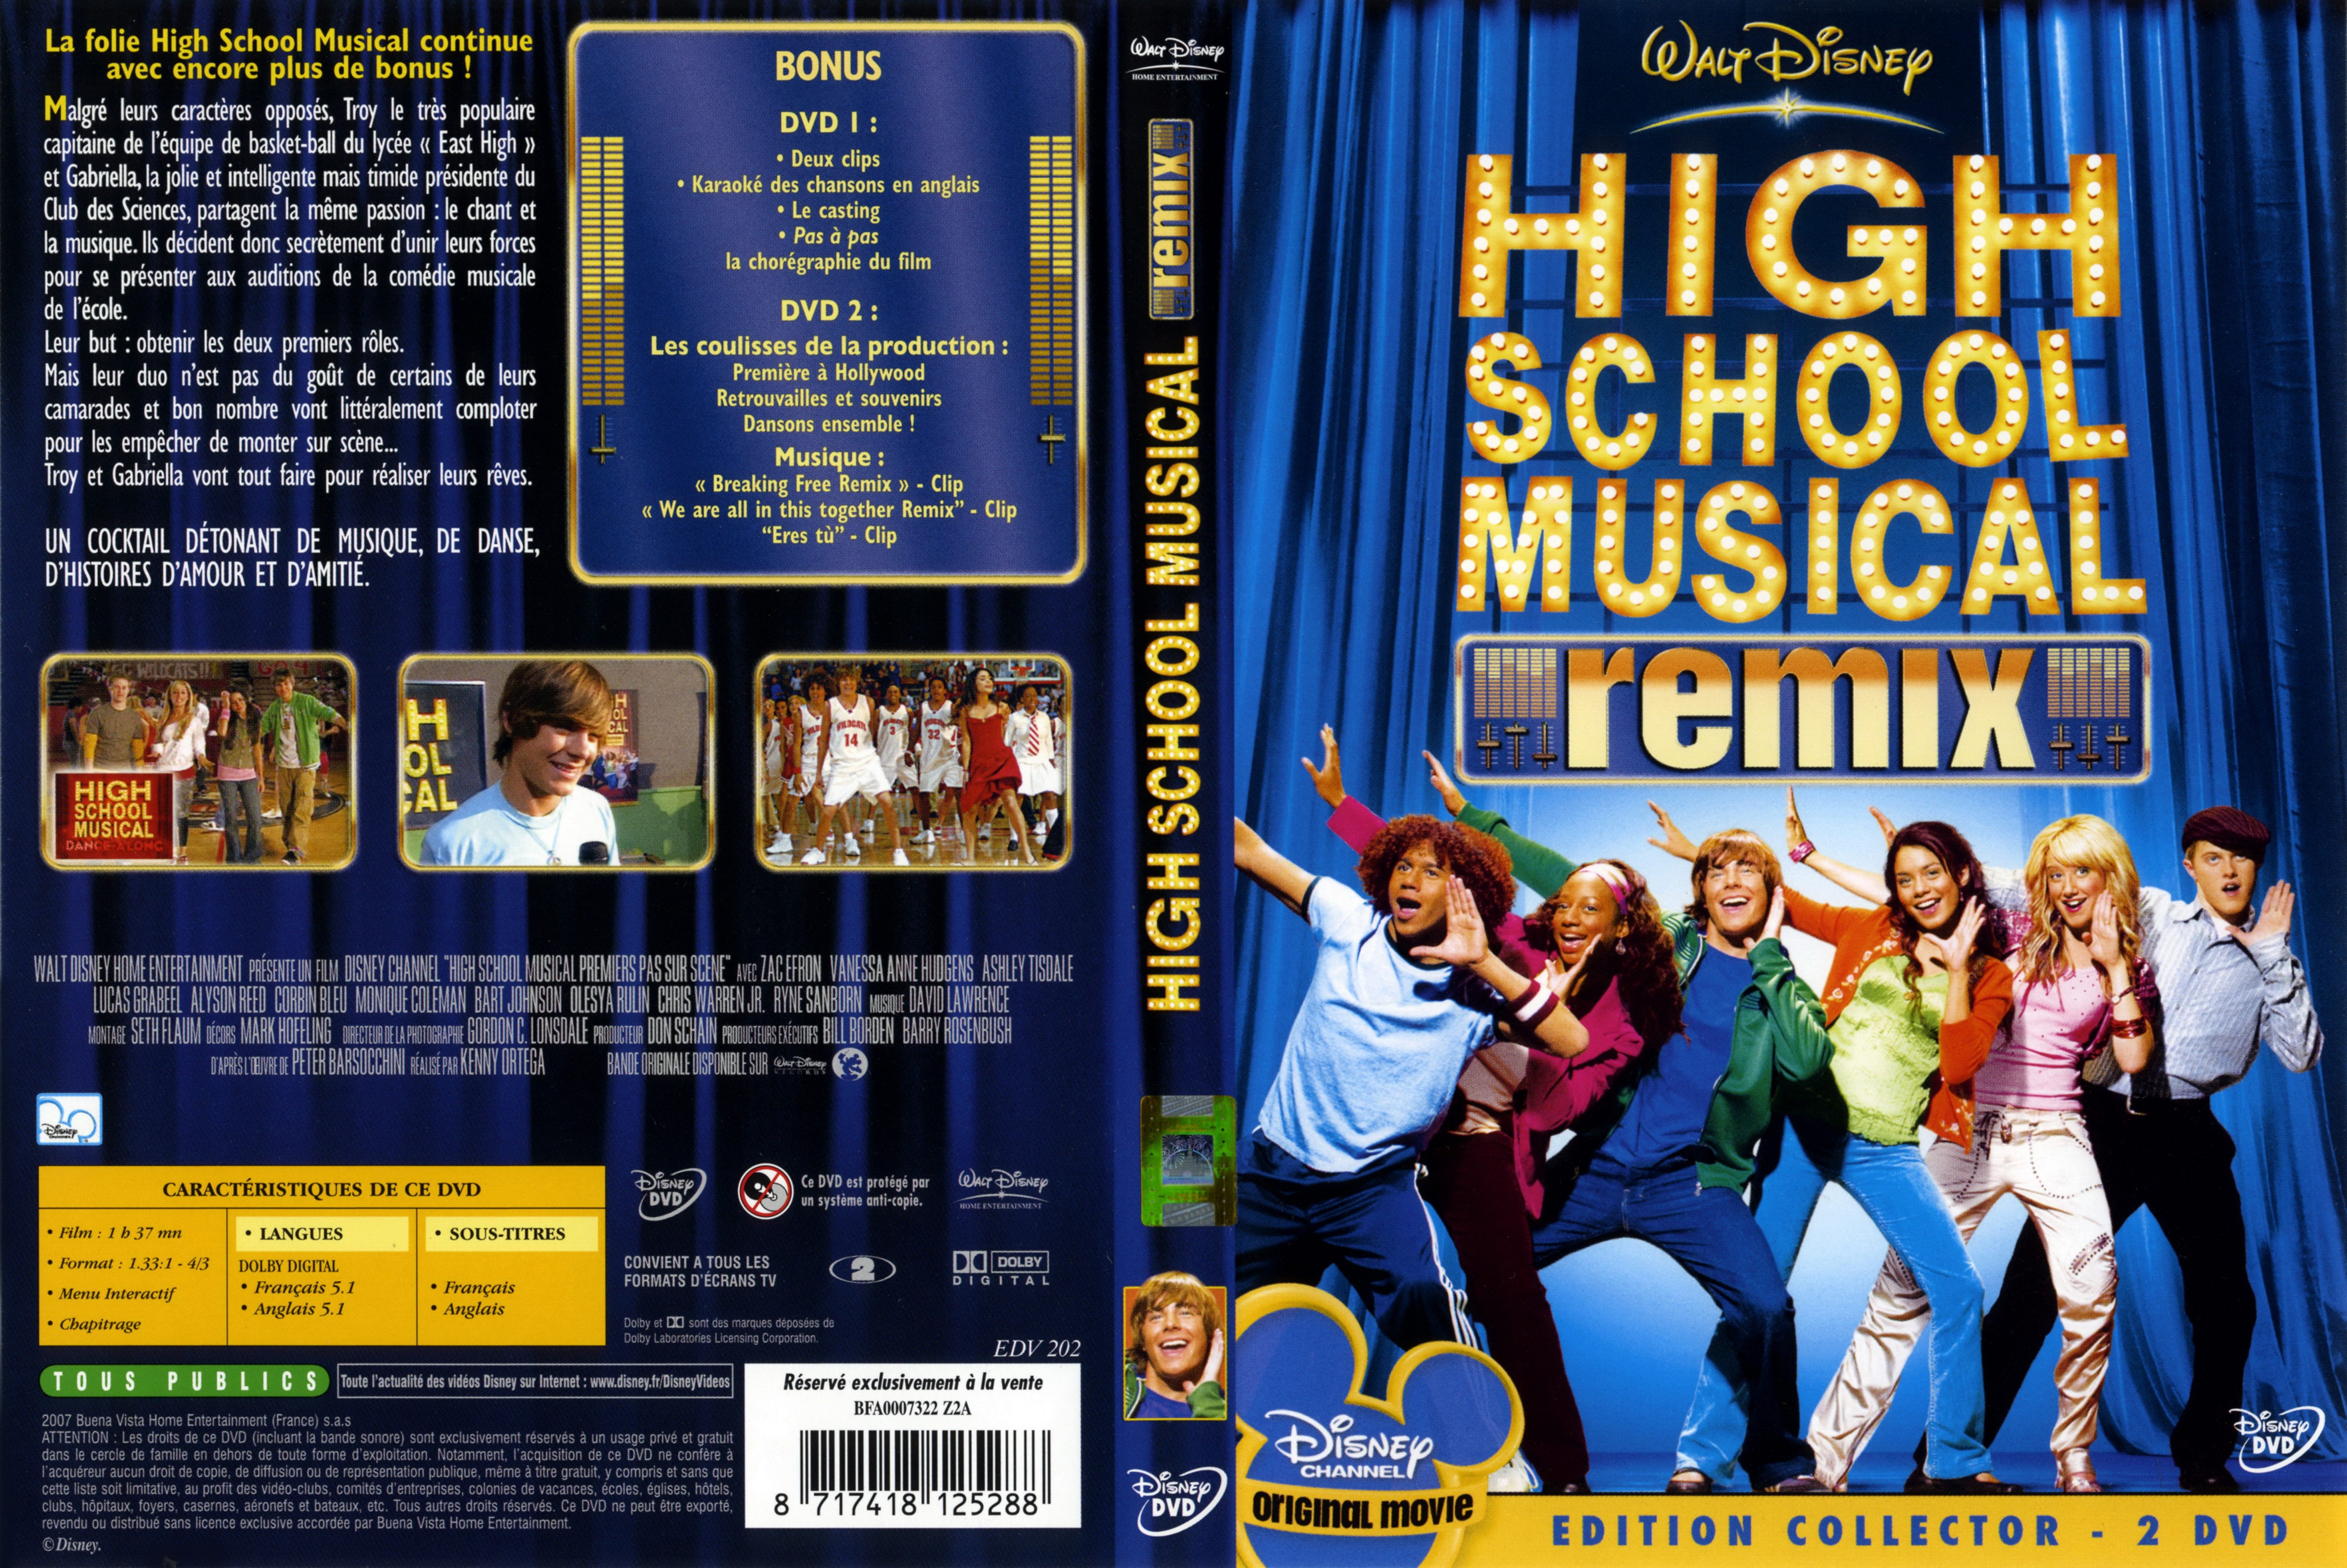 Jaquette DVD High school musical remix